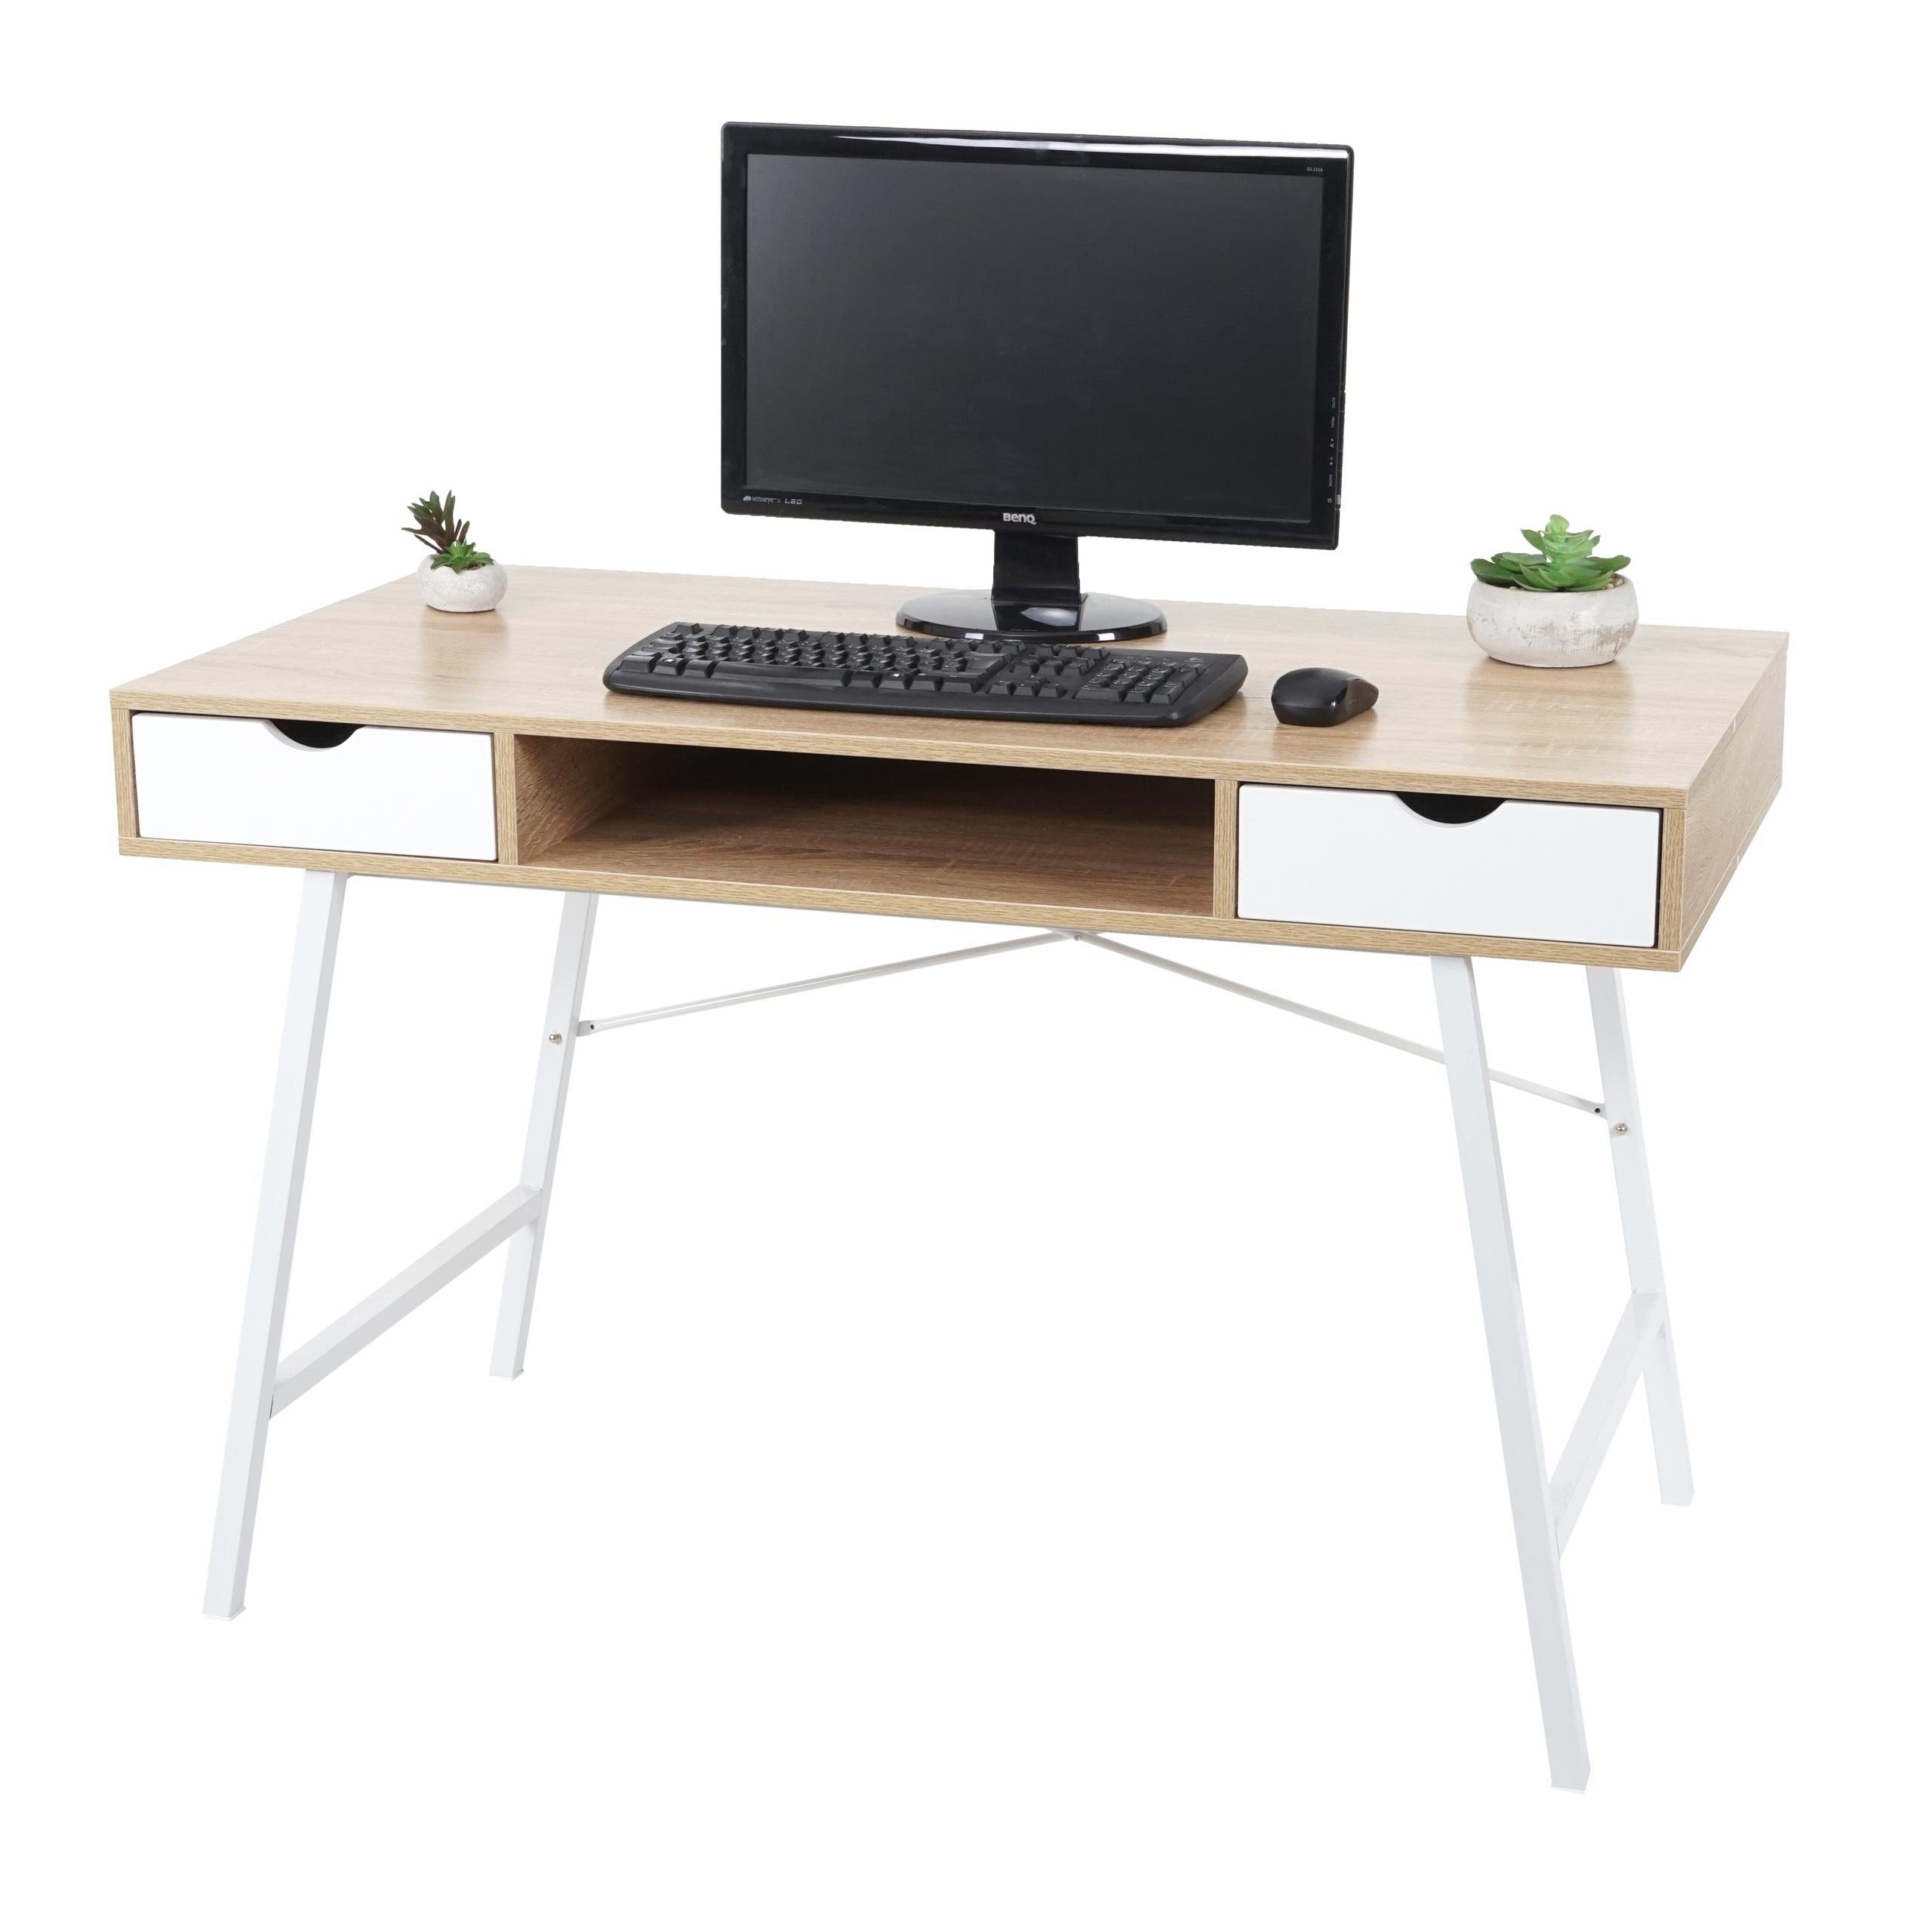 MCW-E92, wasserfeste Oberfläche MCW weiß, Beschichtung, Schreibtisch beige Schubladen, 3D-Struktur